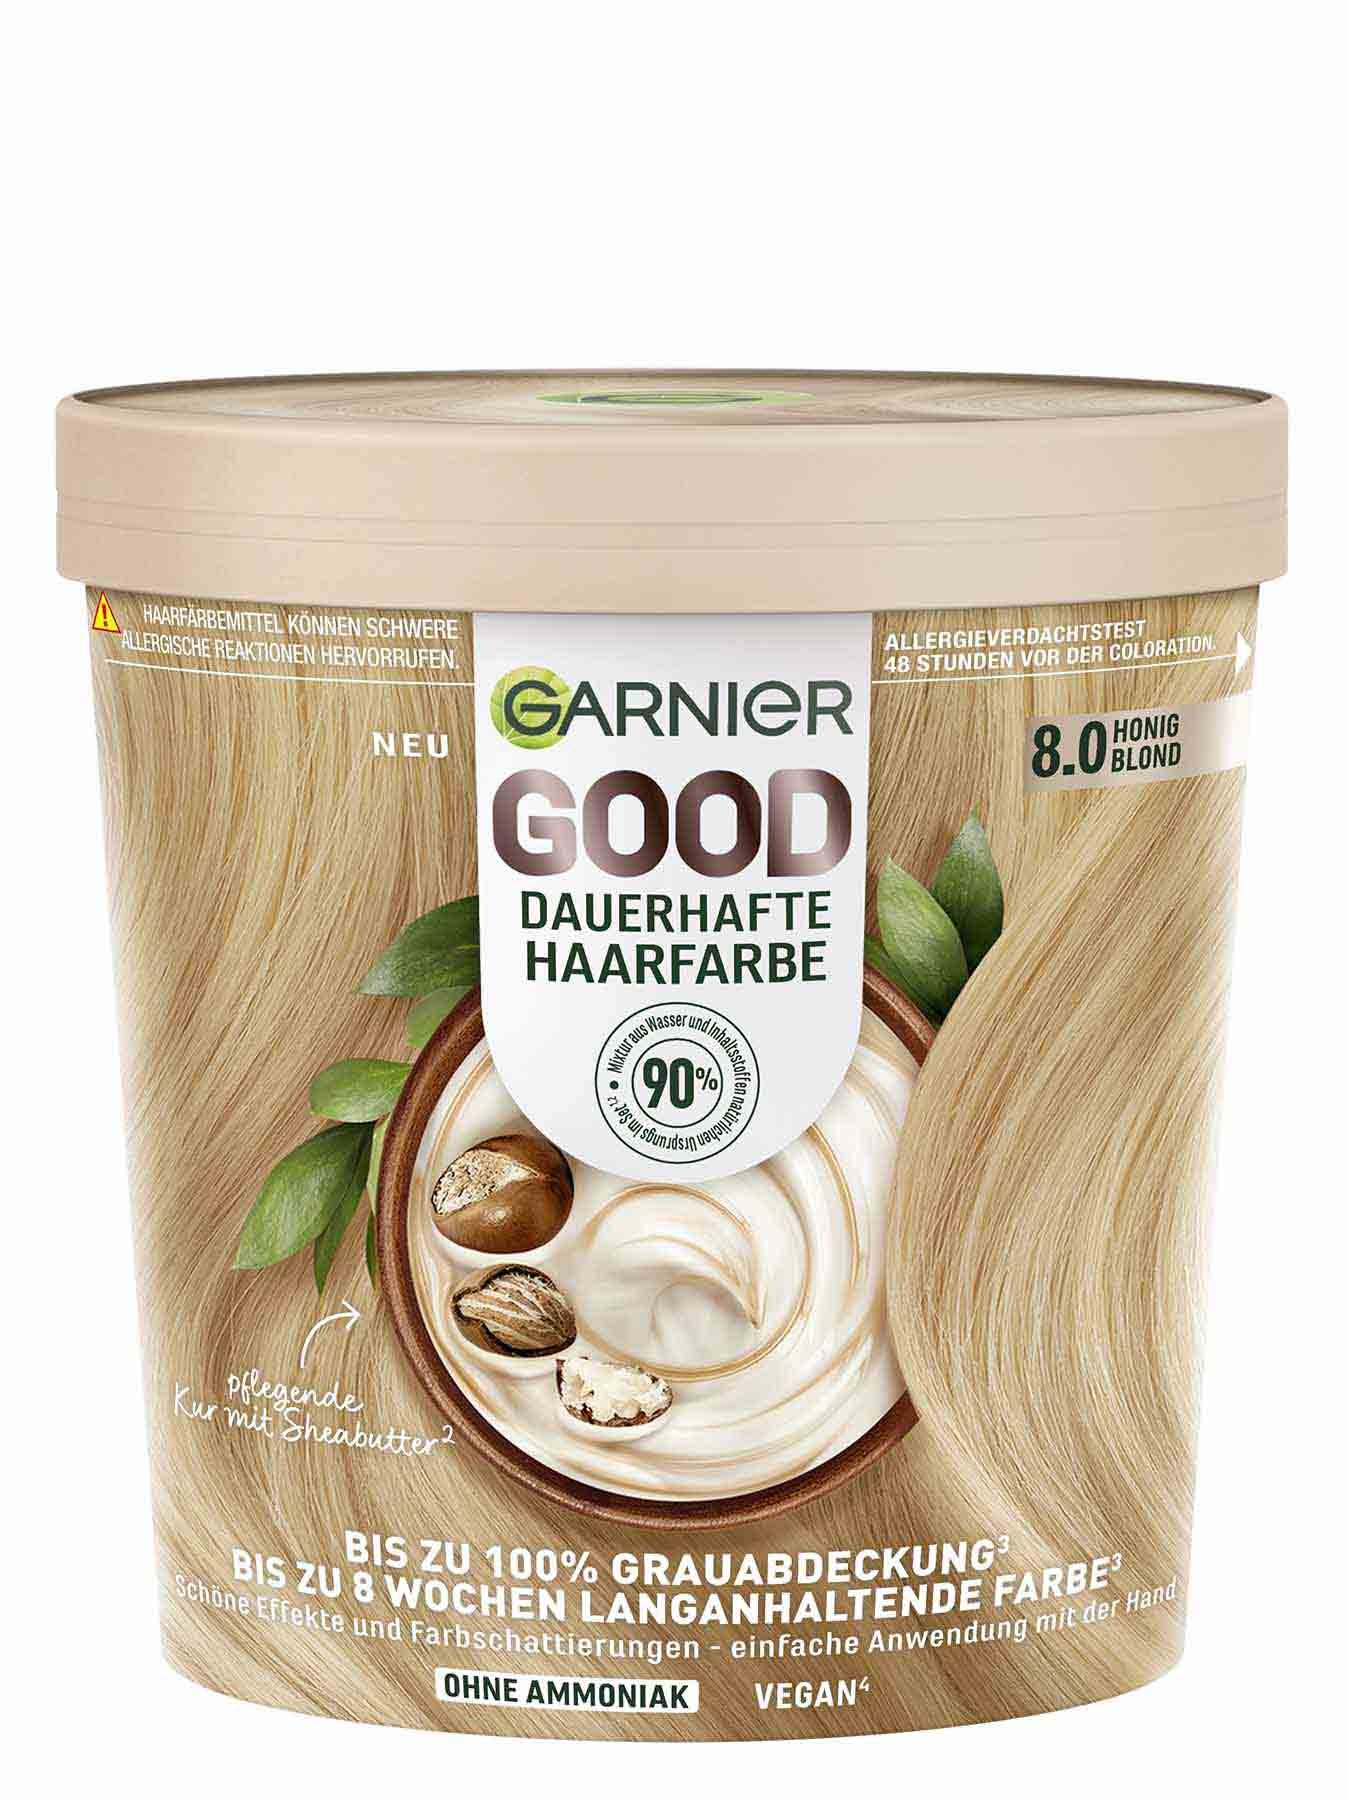 GOOD Dauerhafte Haarfarbe 8.0 Honig Blond Produktbild